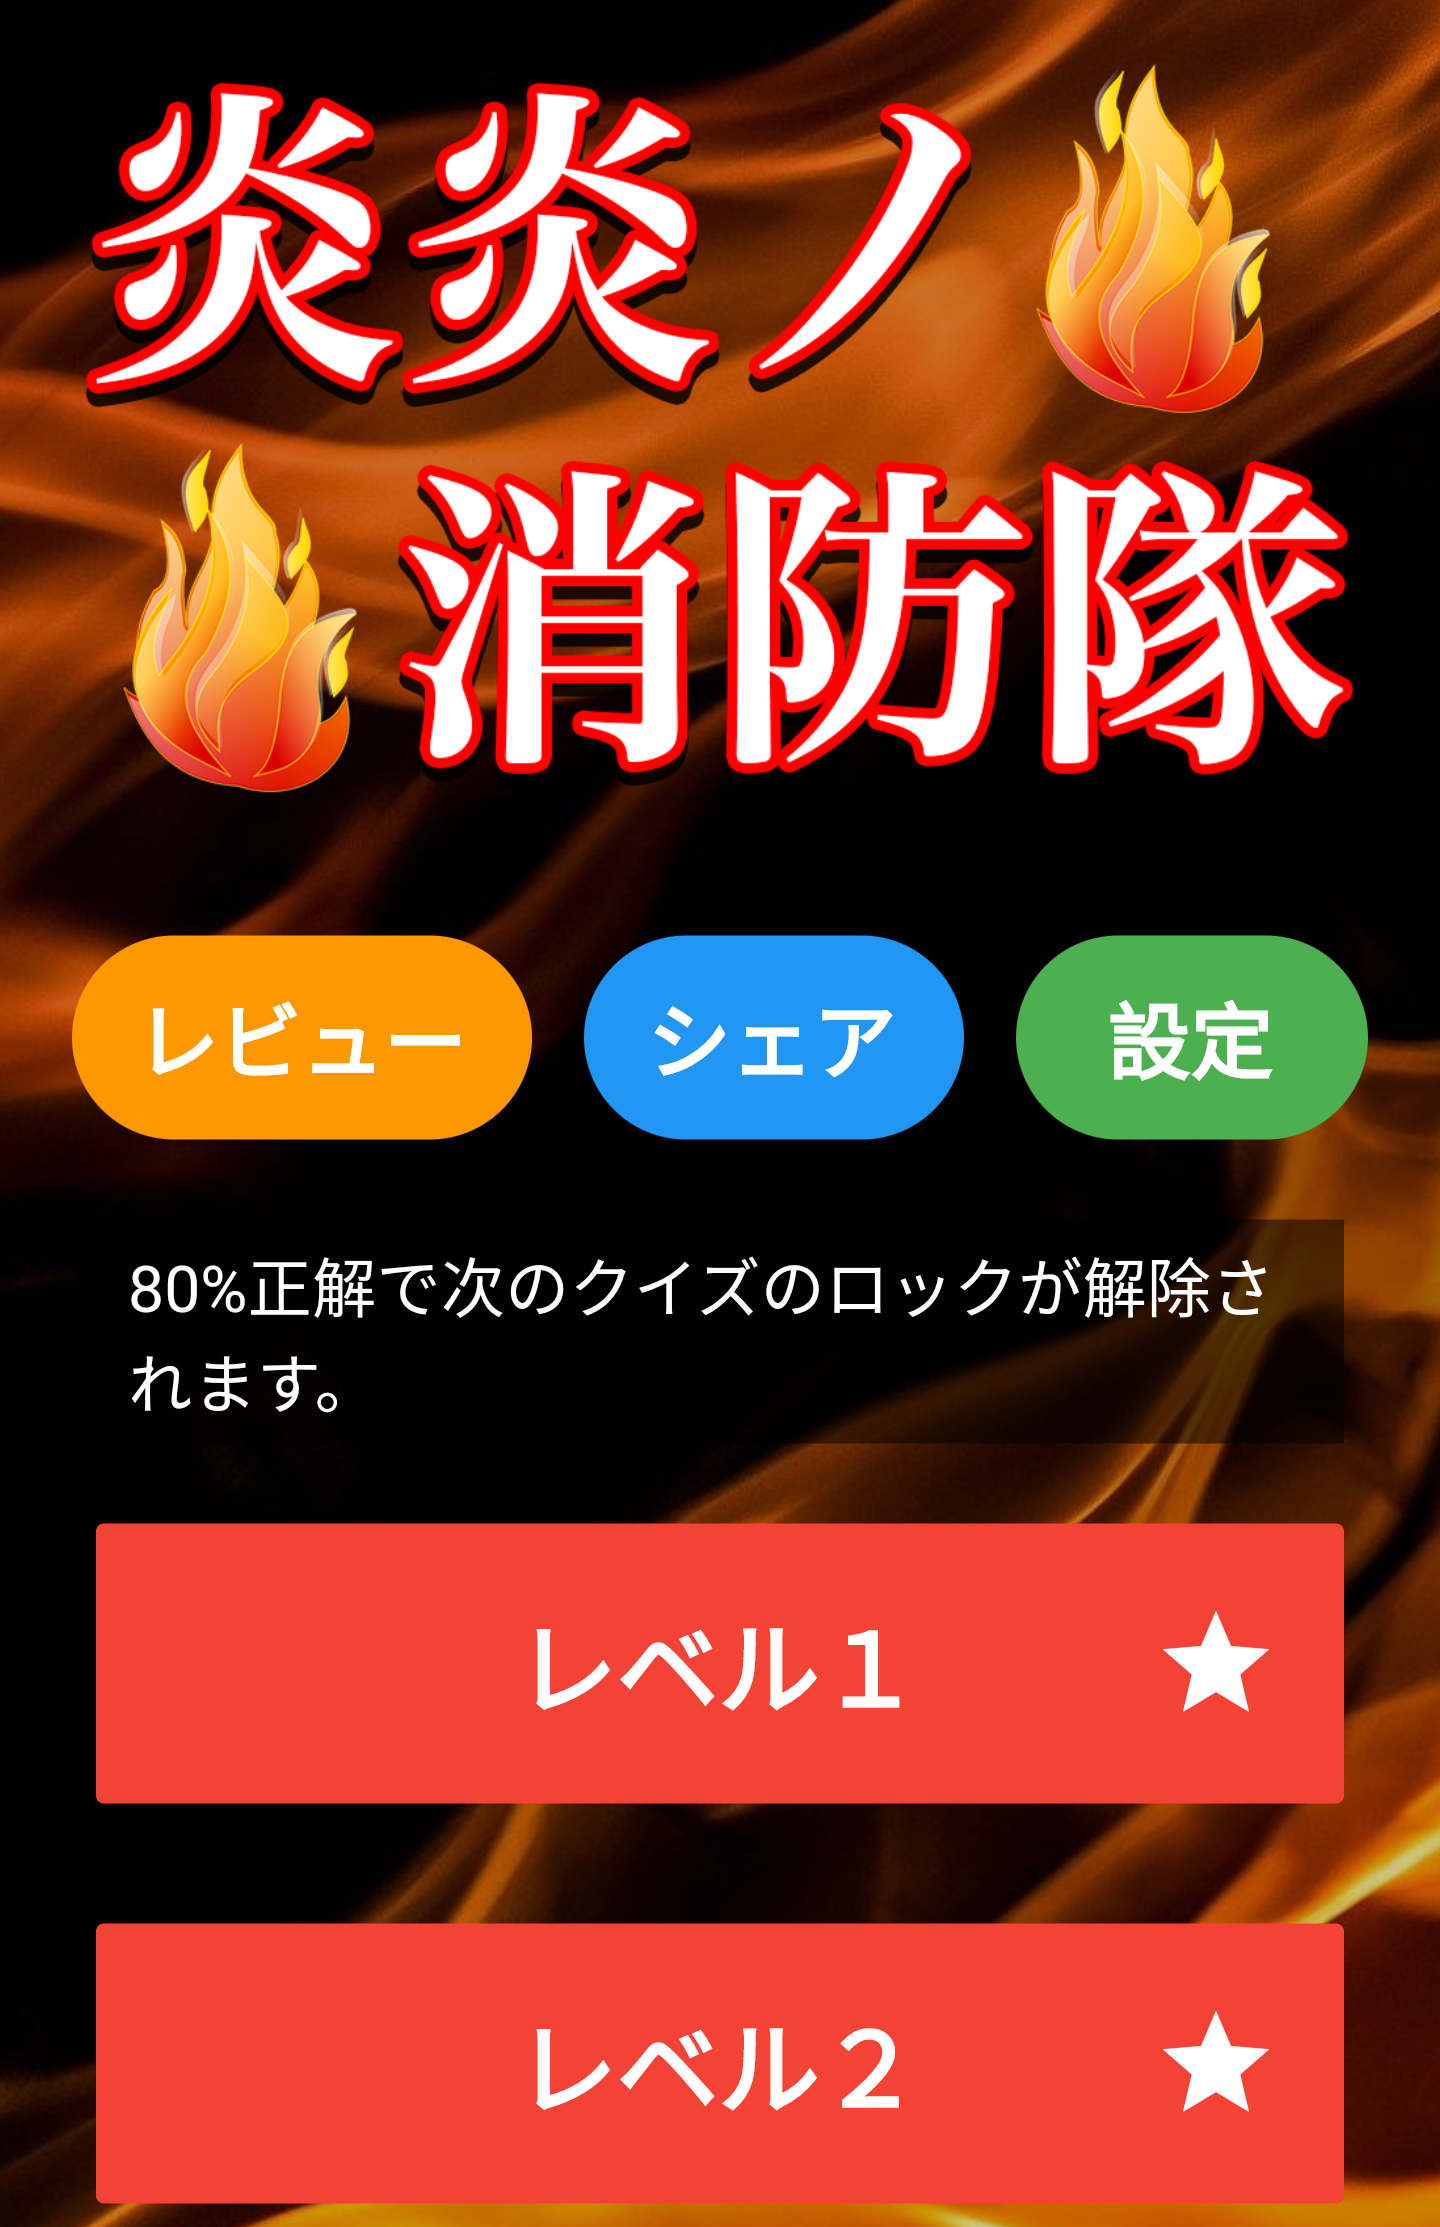 Screenshot 1 of Ứng dụng chẩn đoán câu đố cứu hỏa - Trò chơi miễn phí 1.0.3